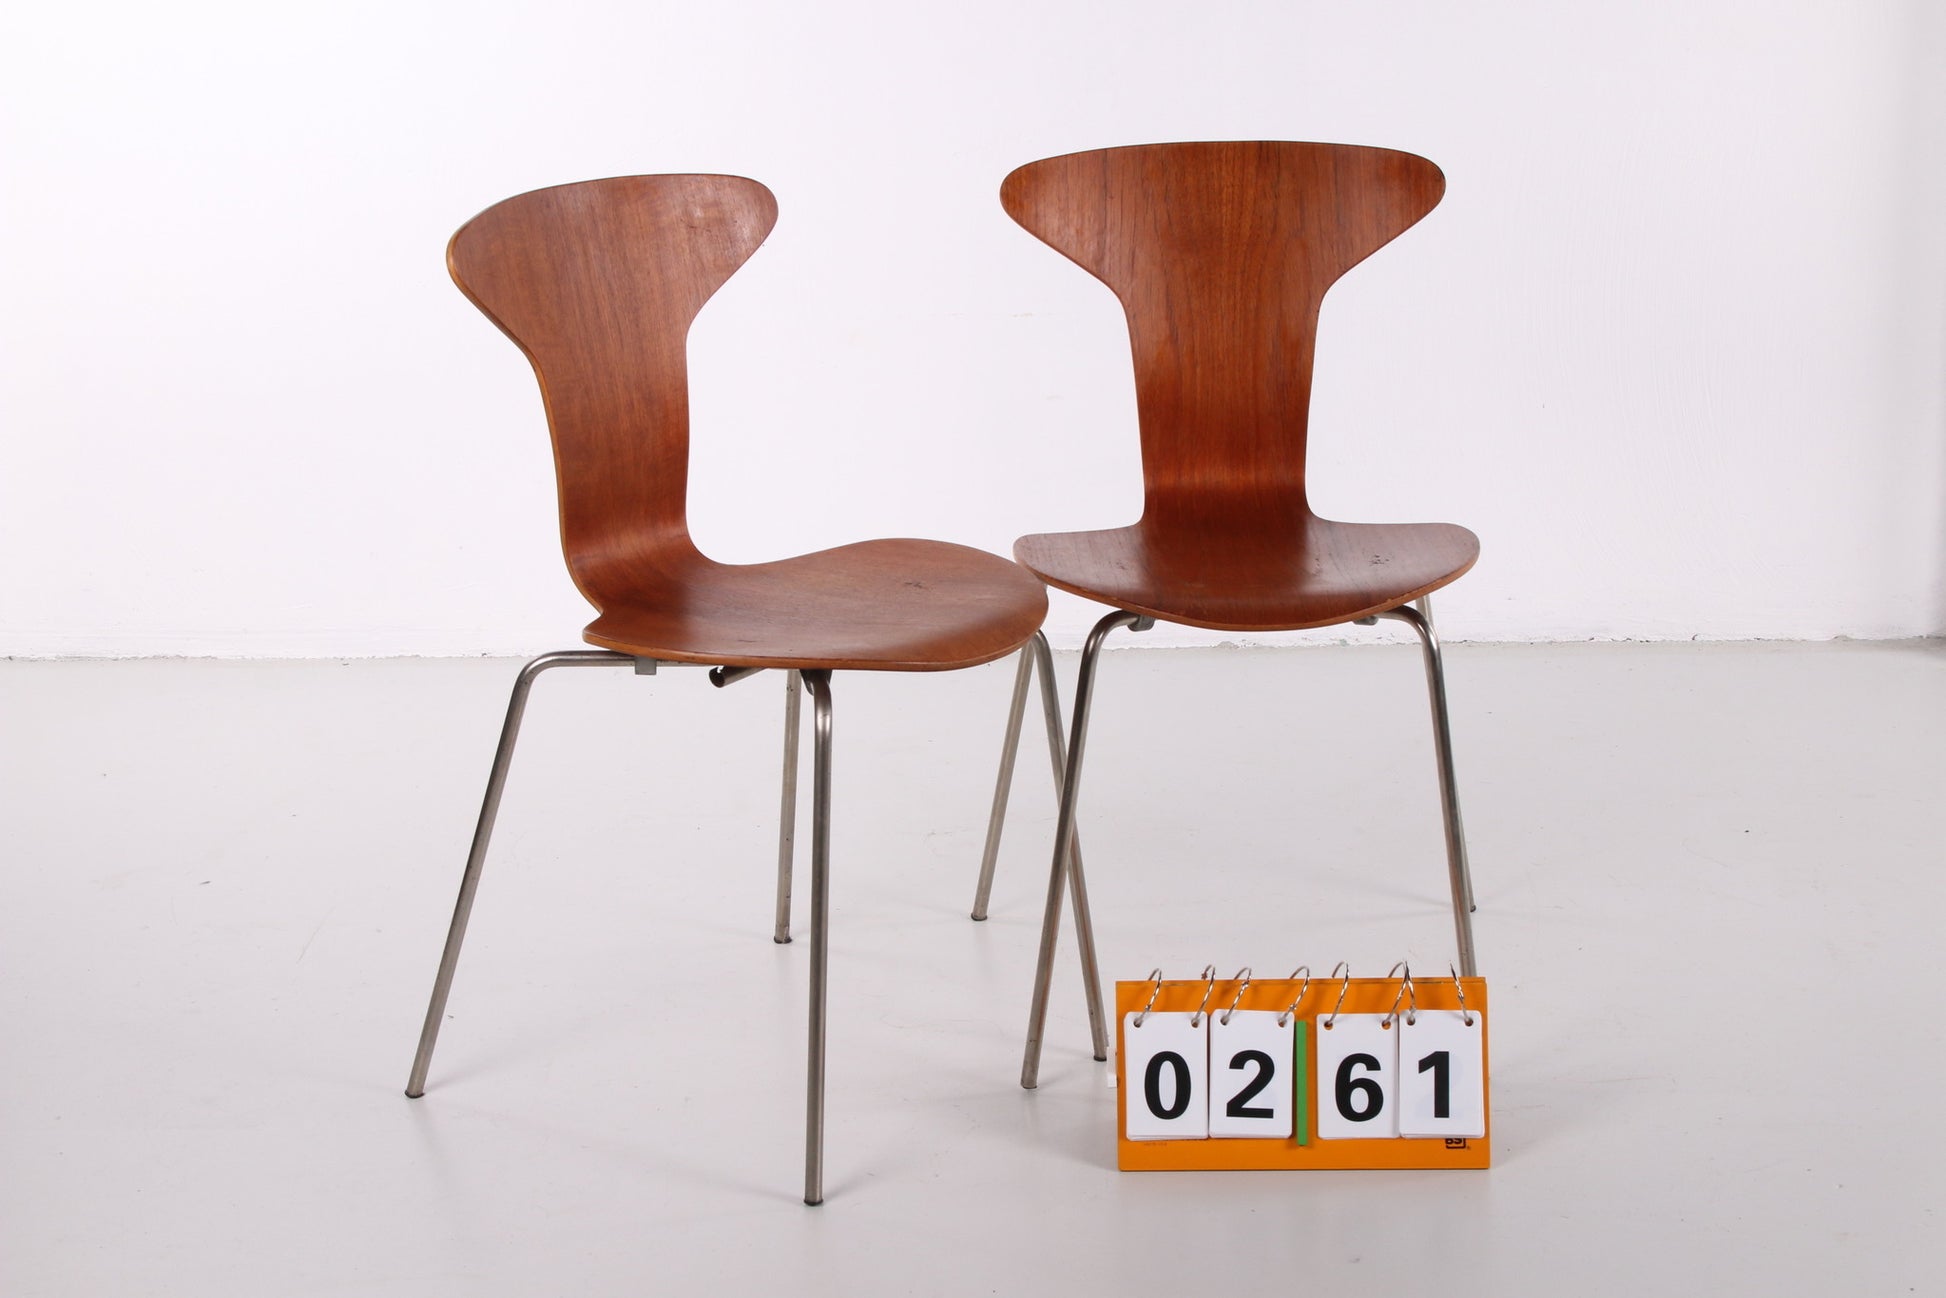 Vintage Arne Jacobsen Mosquito 3105 stoel set van 2 gemaakt door Fritz Hansen 1950s voor en zijkant